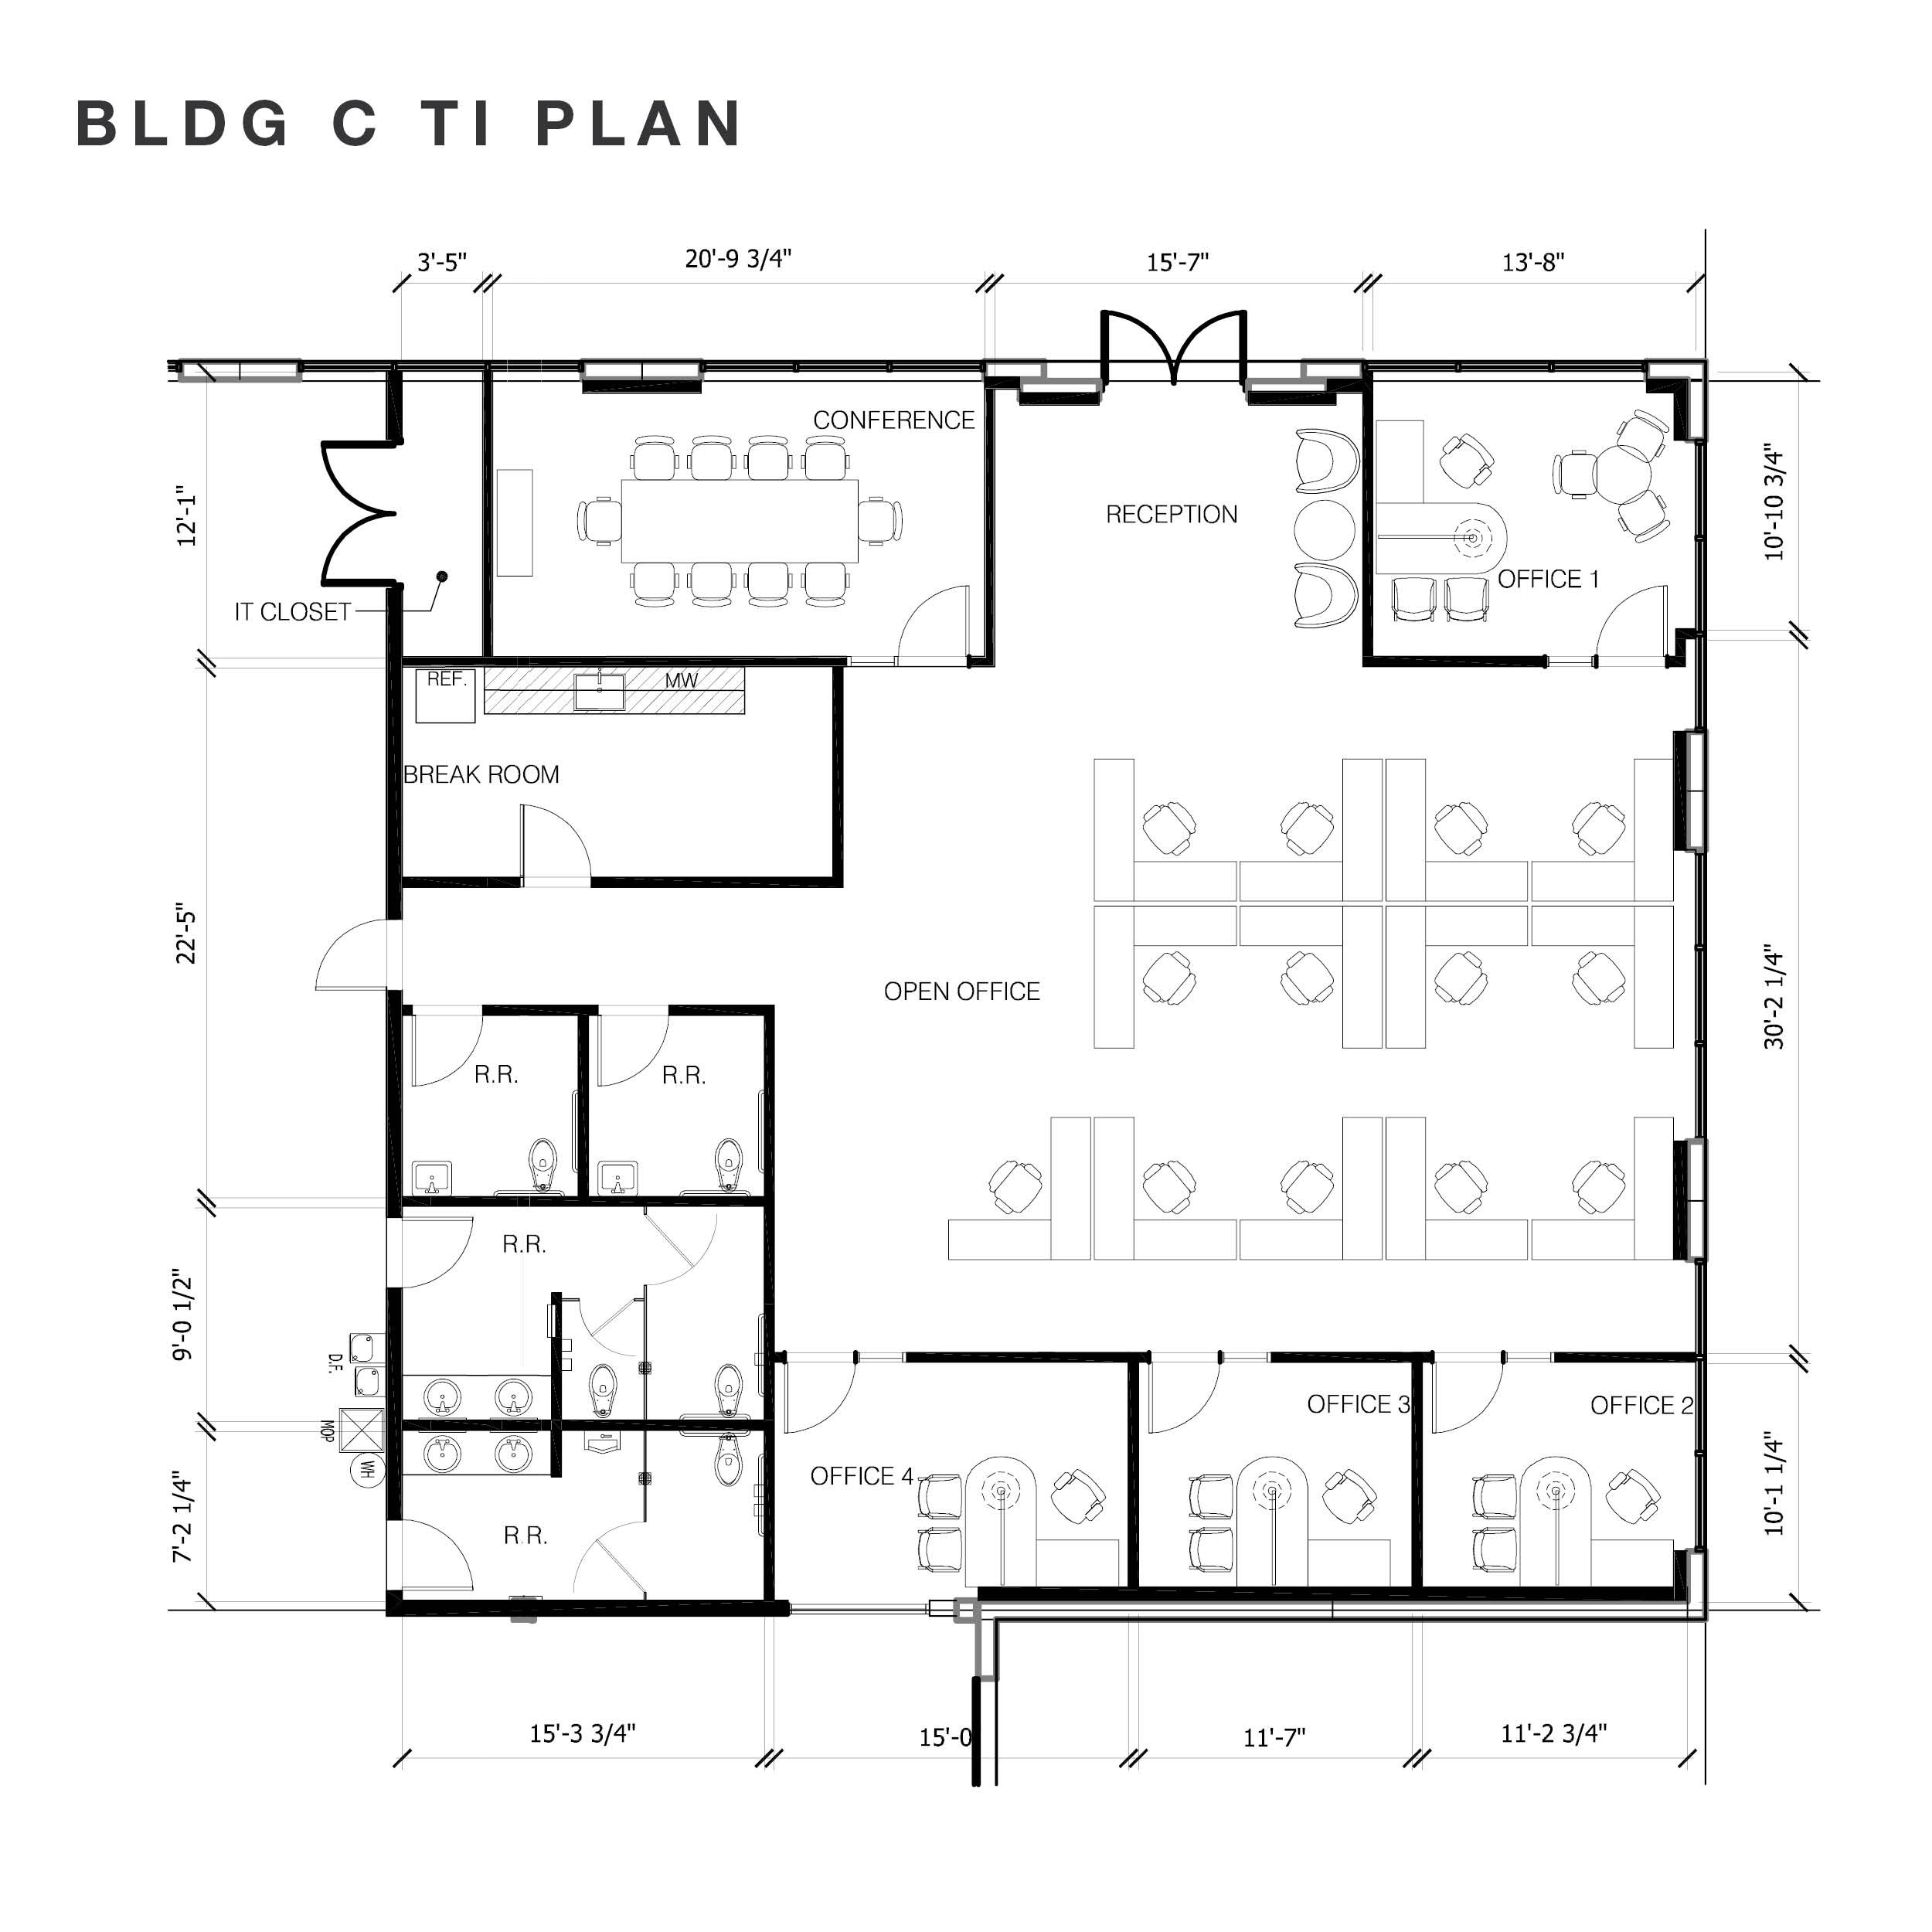 Building C TI Plan